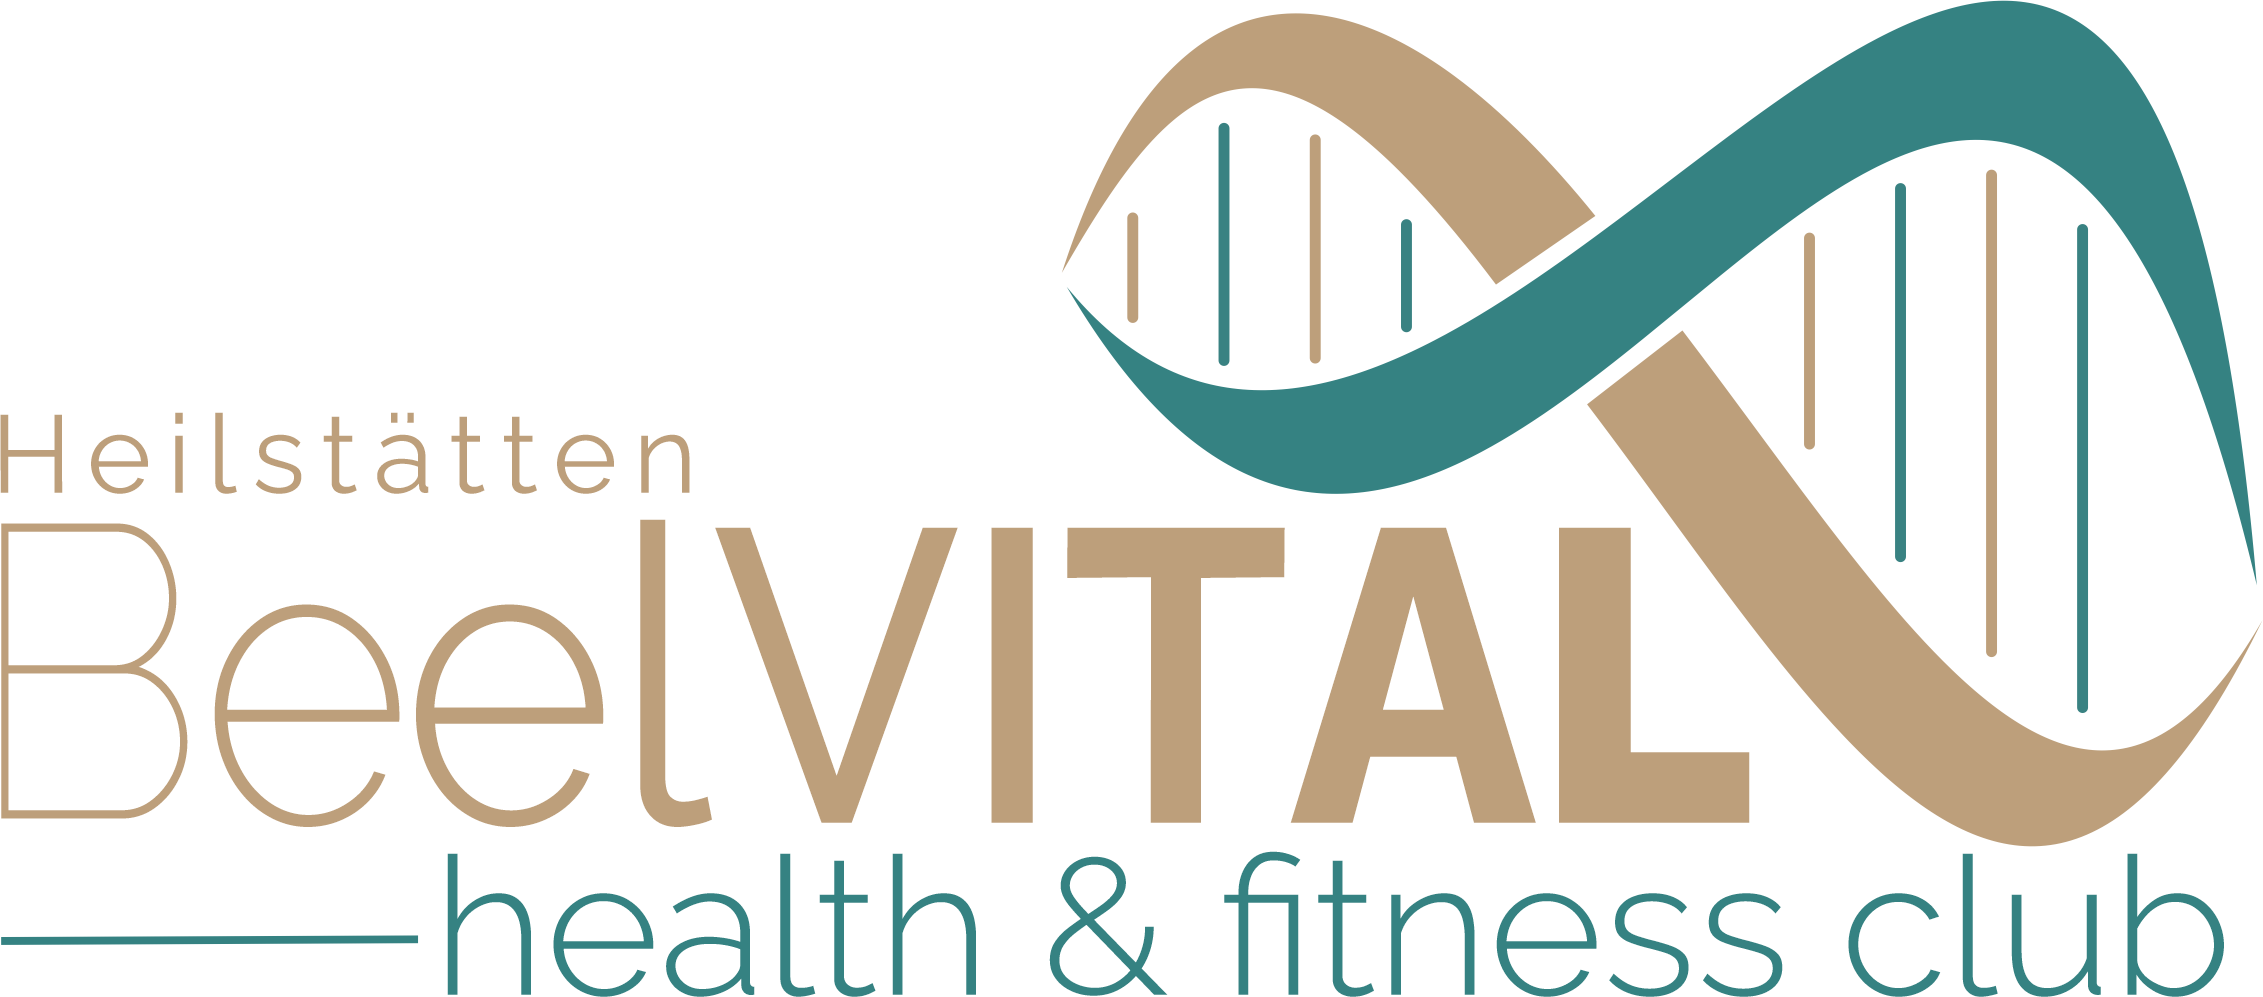 BeelVITAL health & fitness club